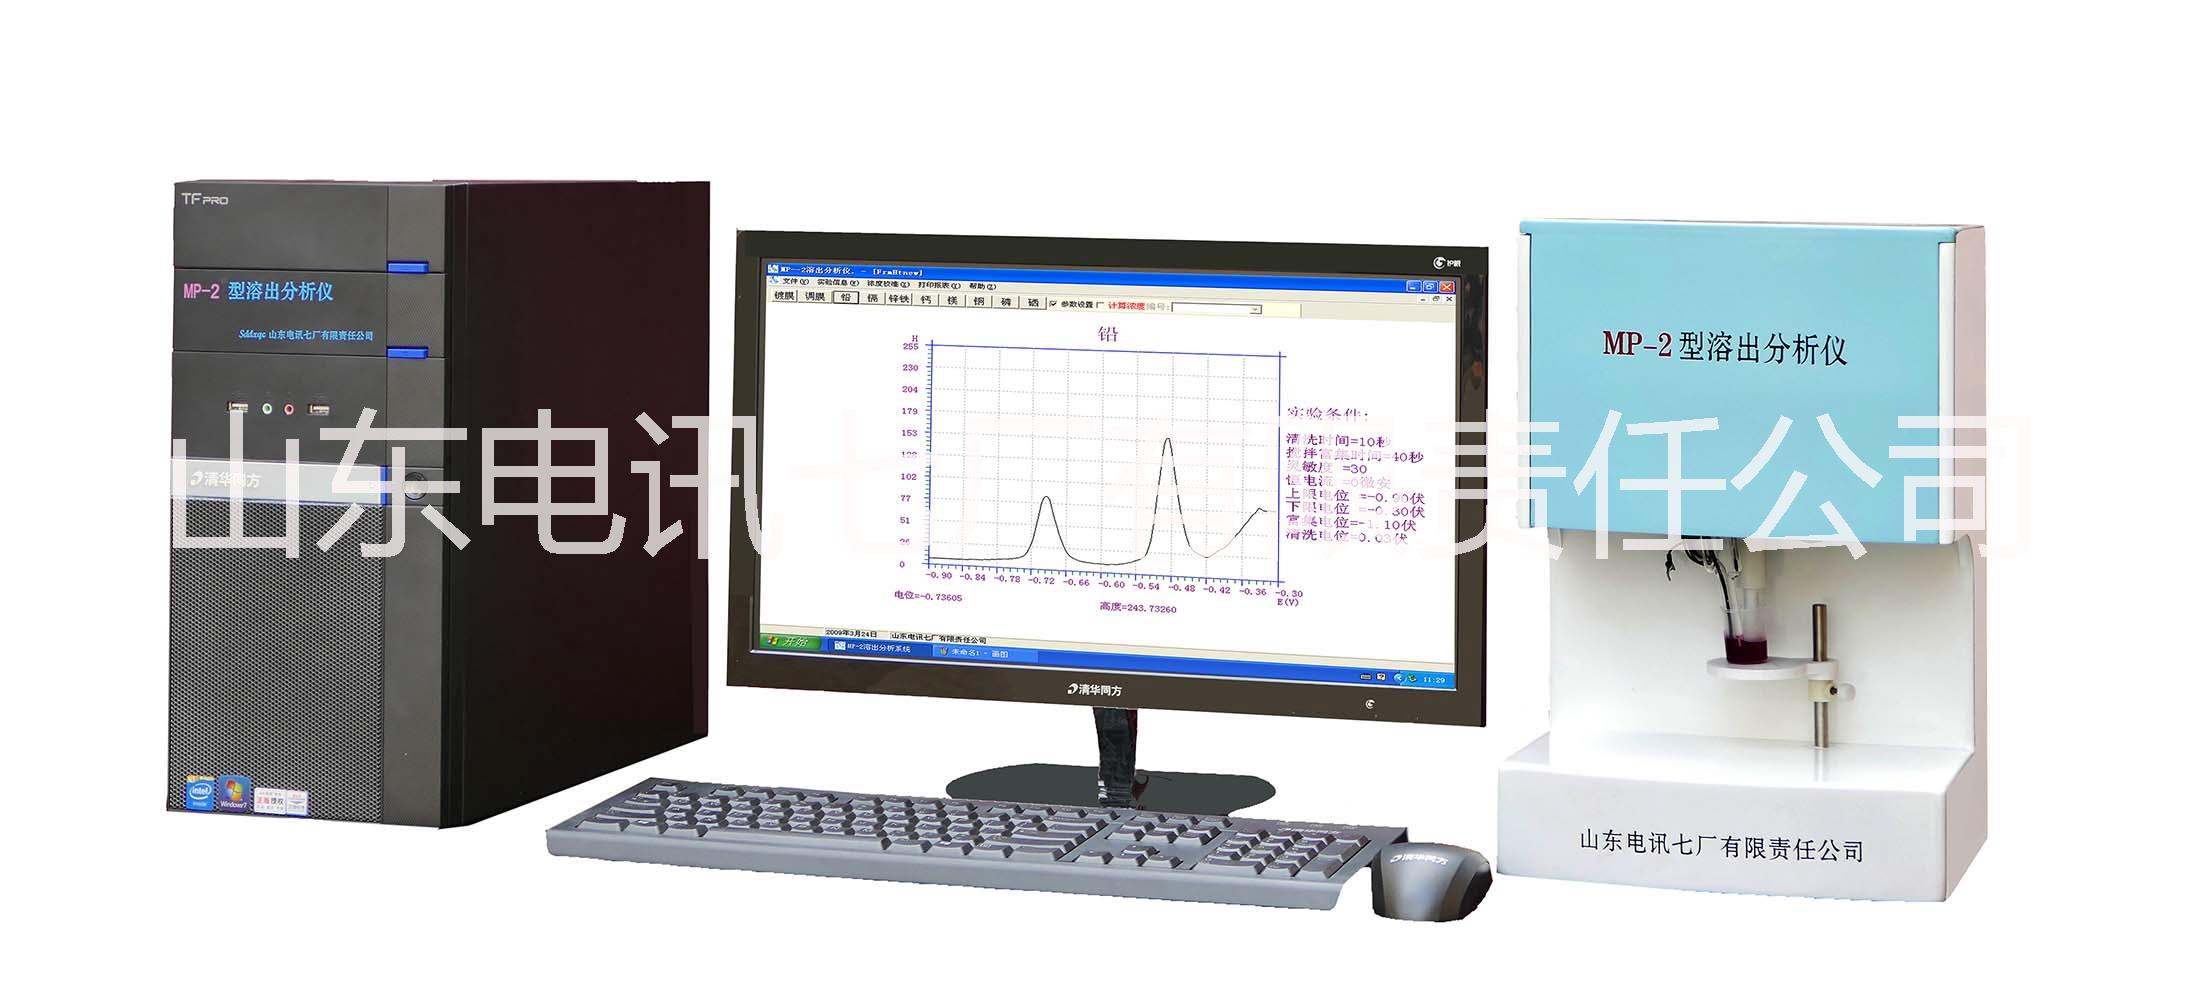 MP-2型溶出分析仪血铅专用型血液尿液检测分析仪微量元素分析仪图片